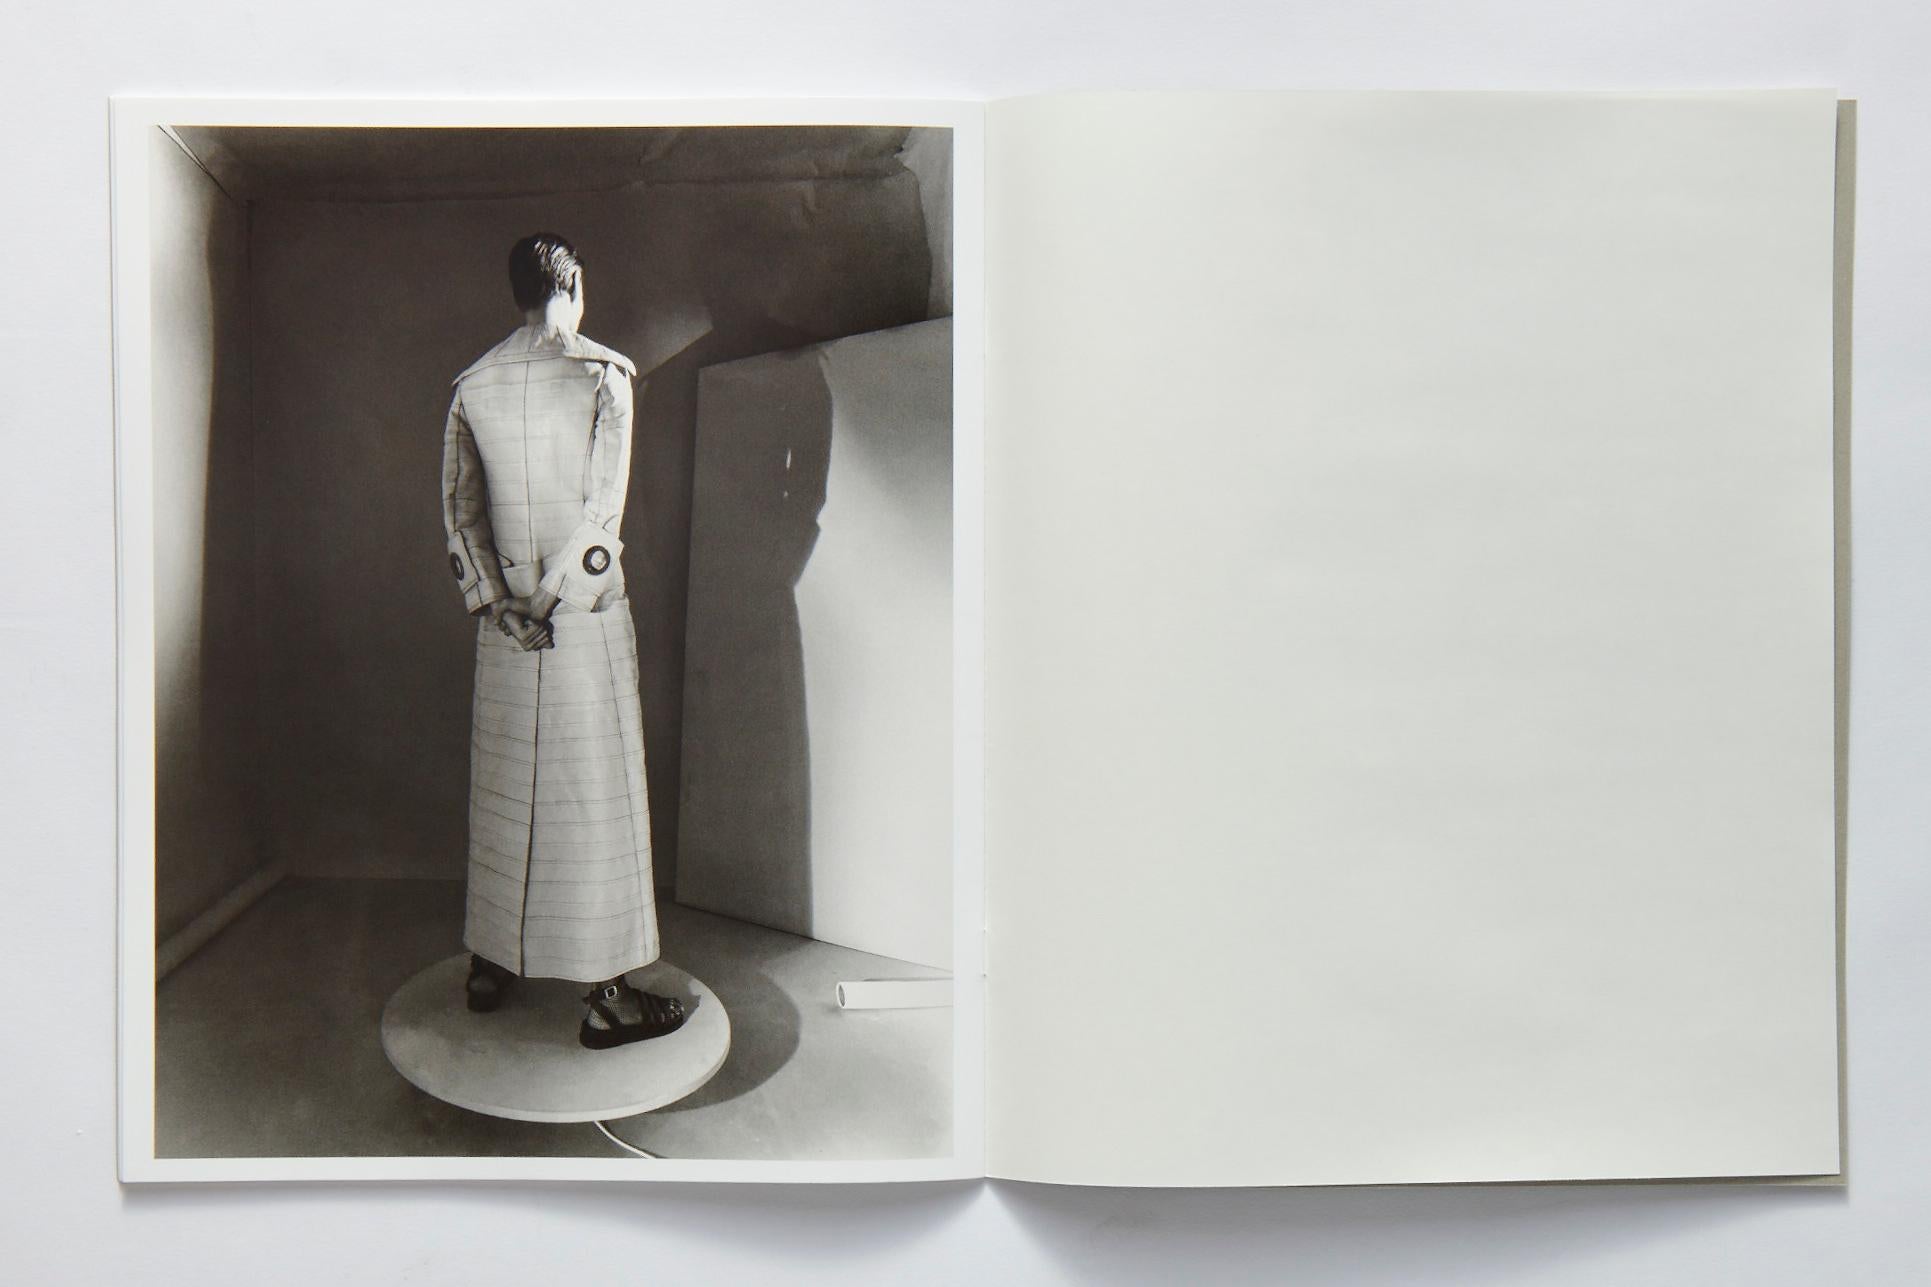 555: The Fashion Archive von Francisco Costa auf dem Prüfstand im Angebot 6